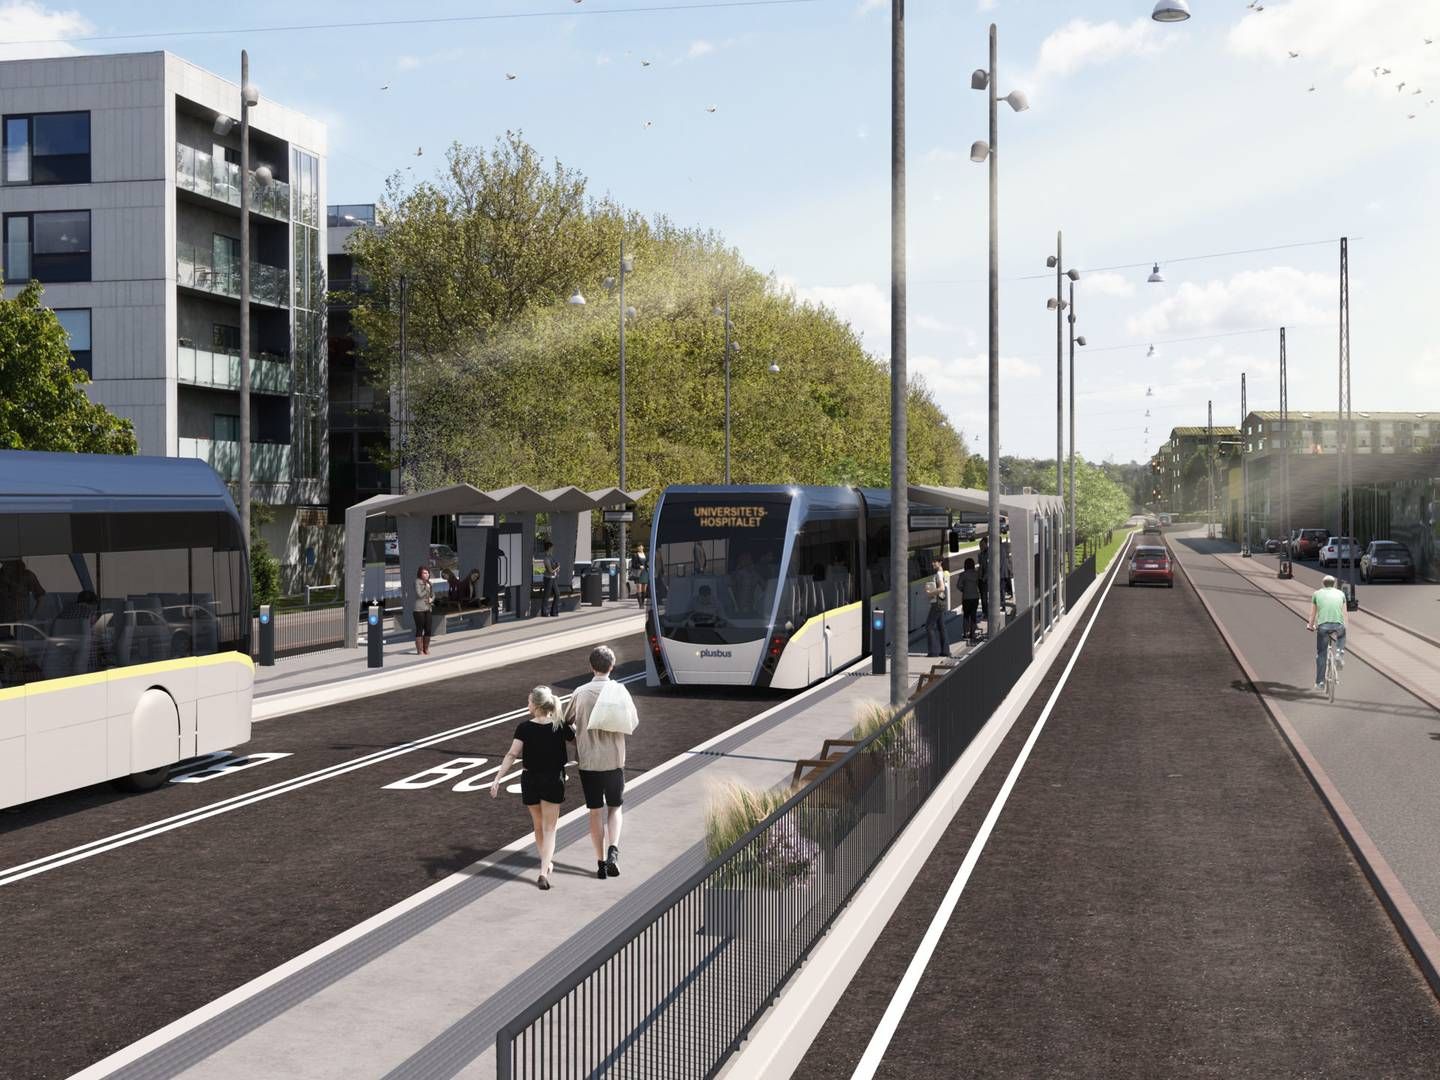 En BRT-bane, som denne i Aalborg, kan muligvis blive en realitet på Spanien-Brabrand-strækningen i Aarhus. | Foto: AALBORG KOMMUNE